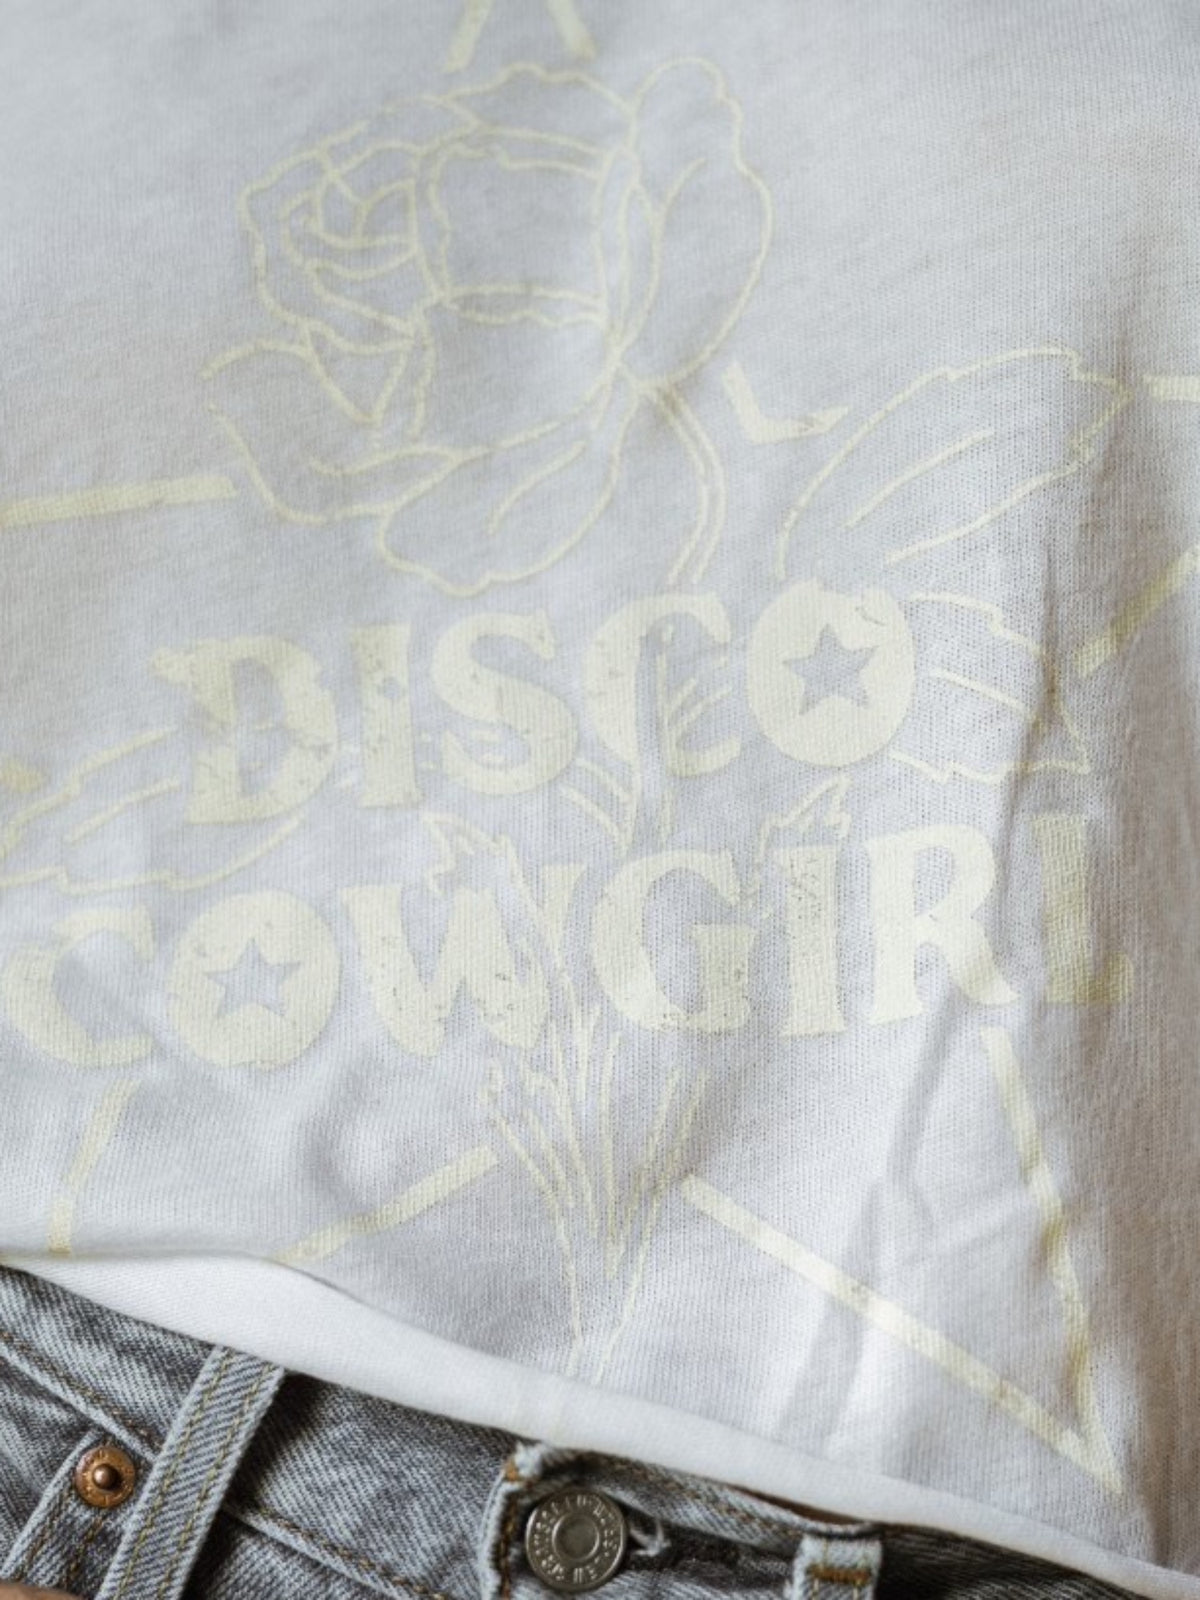 Disco Cowgirl - Disco Cowgirl Tee - White on White - Council Studio